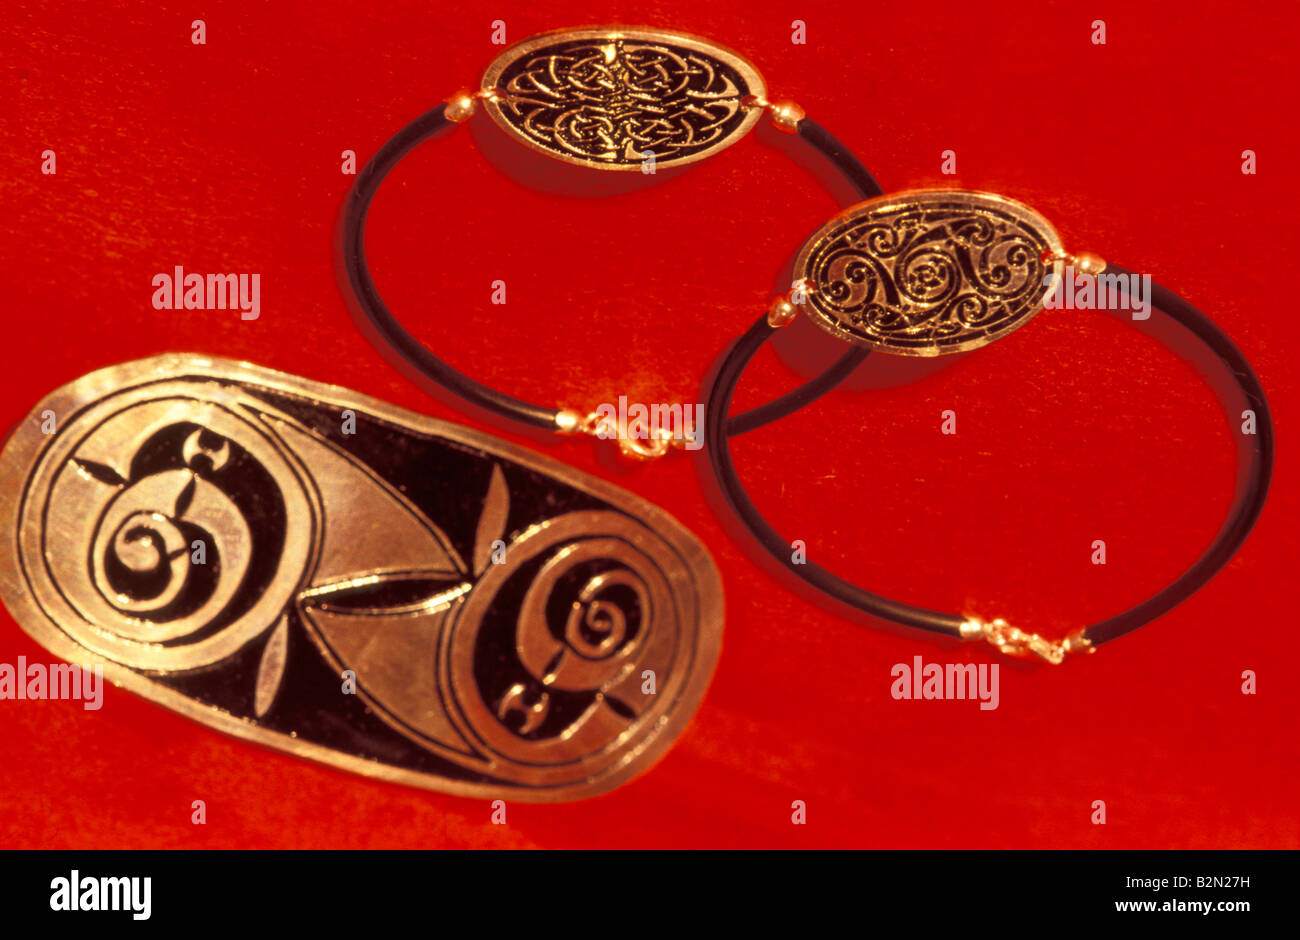 Fête celtique : colliers, Courmayeur, Italie Banque D'Images